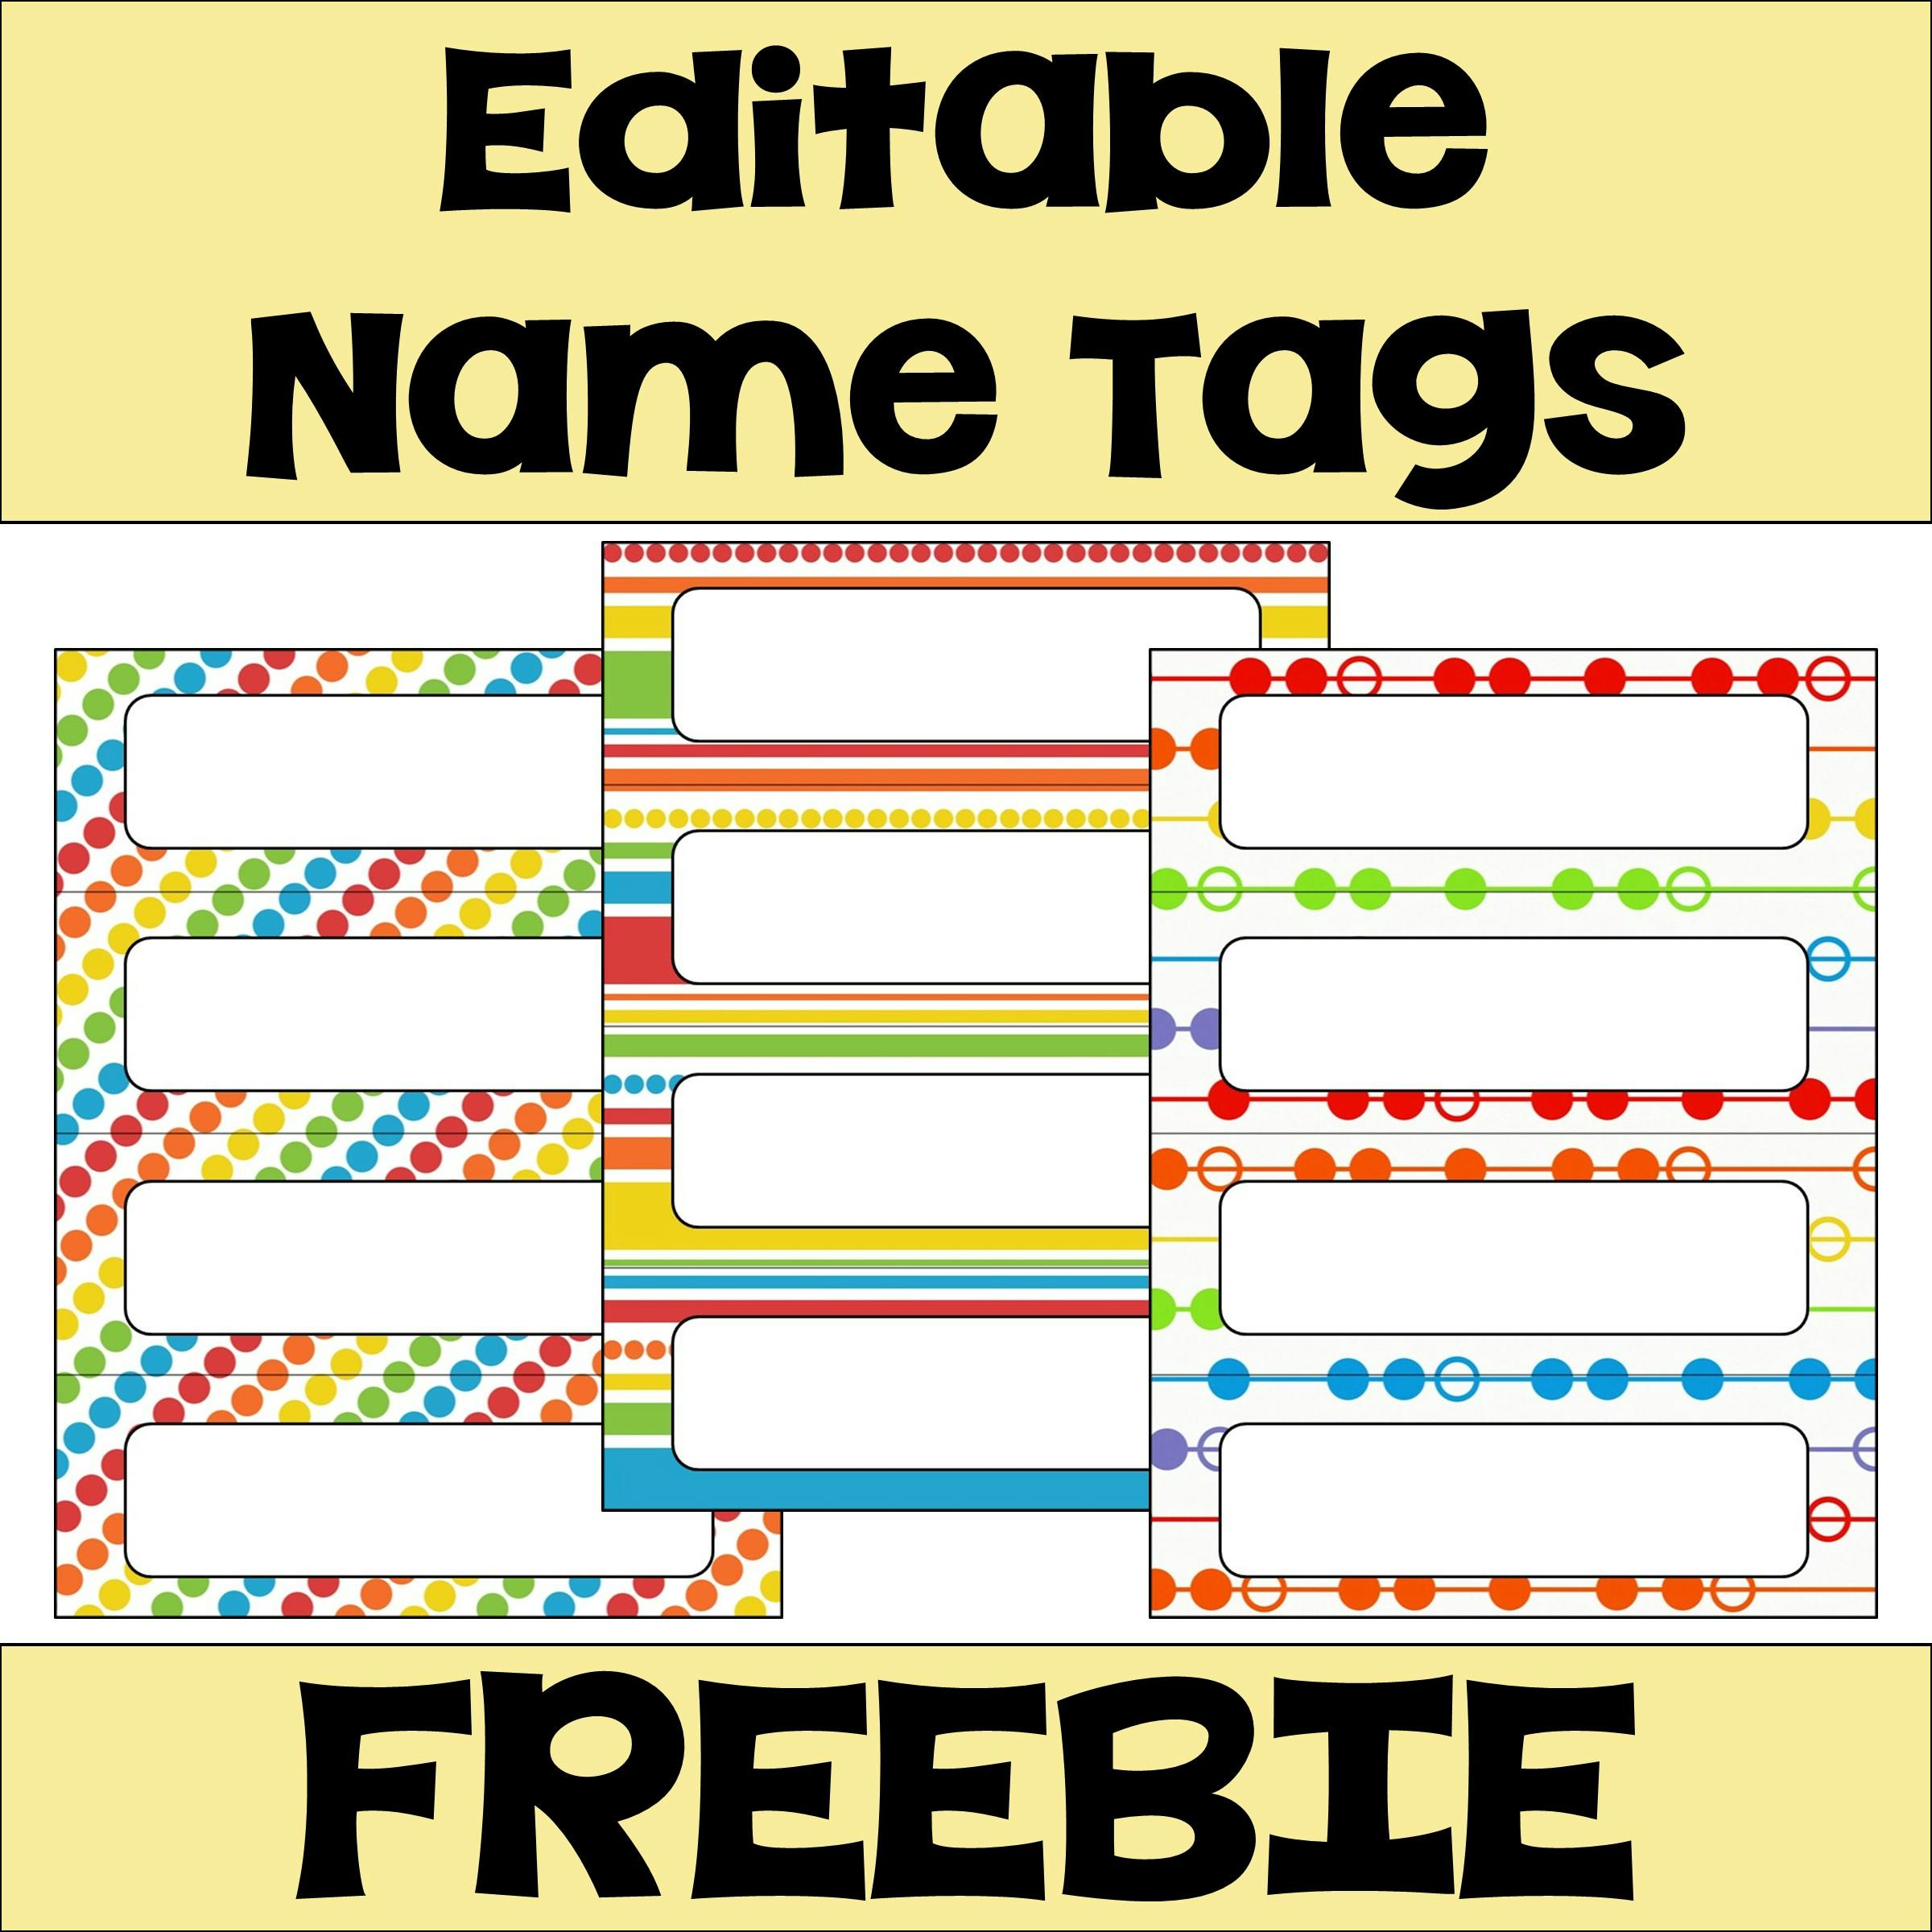 free-editable-name-tags-printable